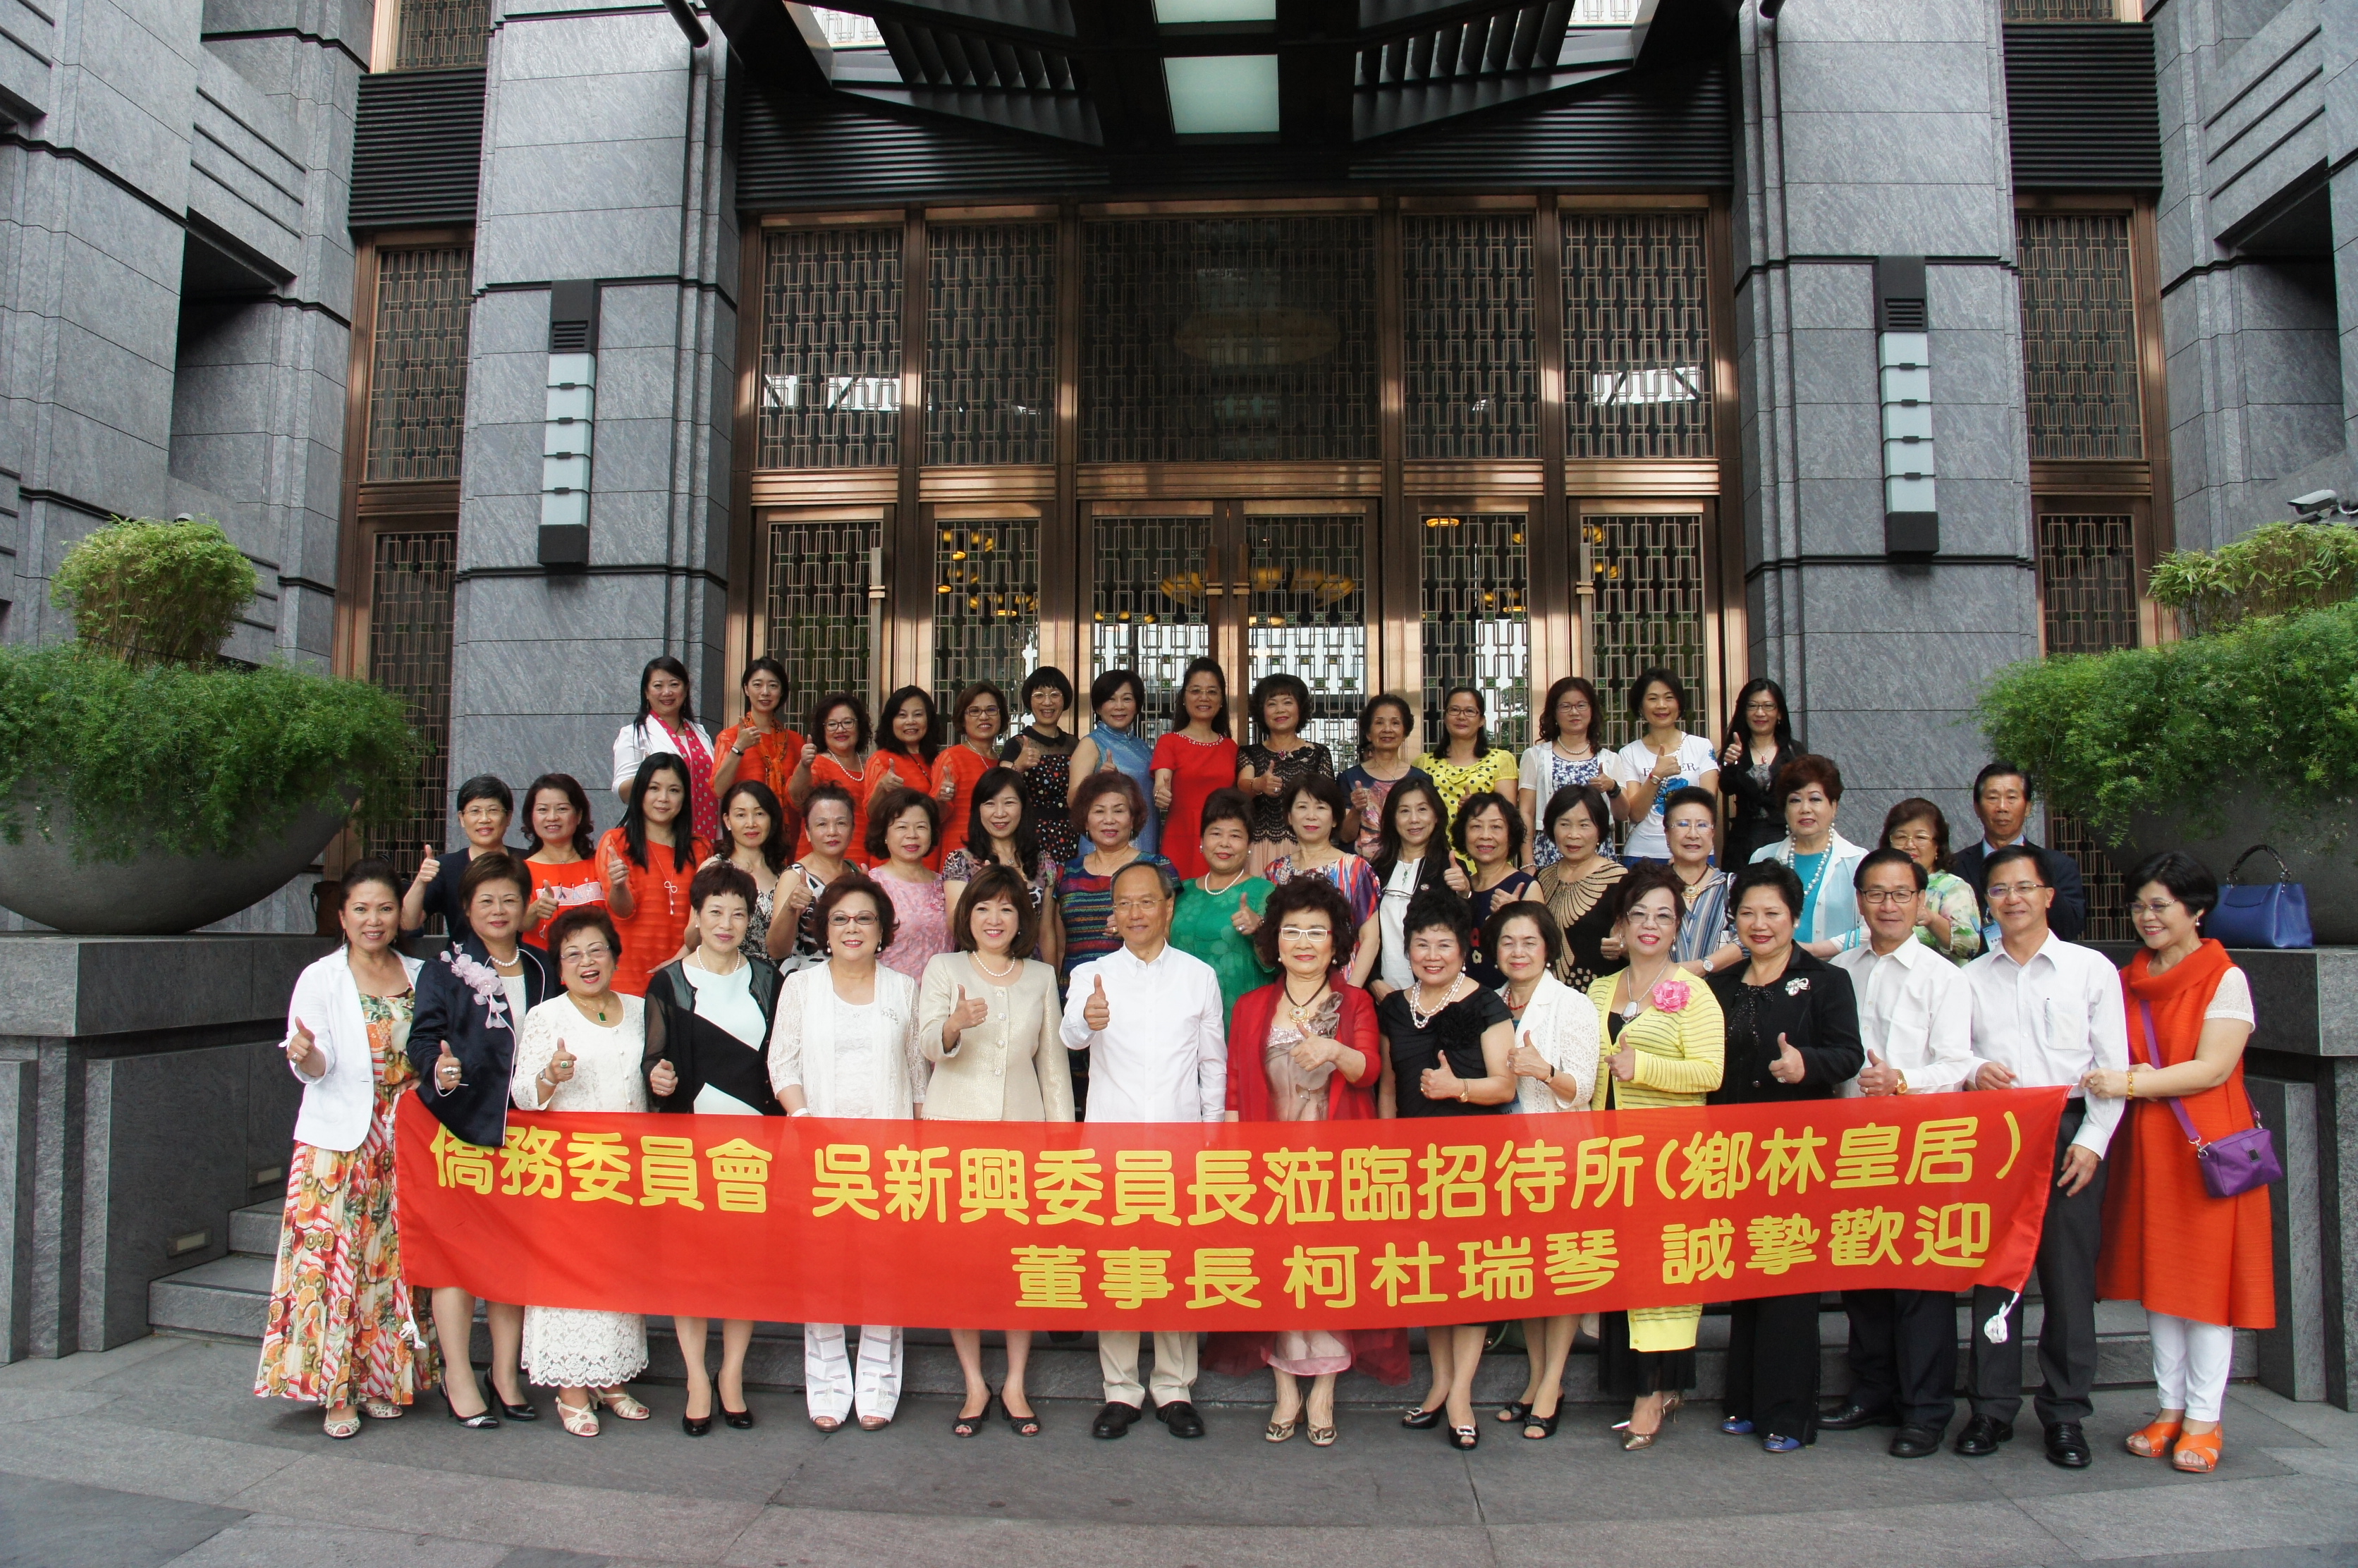 世界華人工商婦女企管協會聚臺中歡迎吳新興